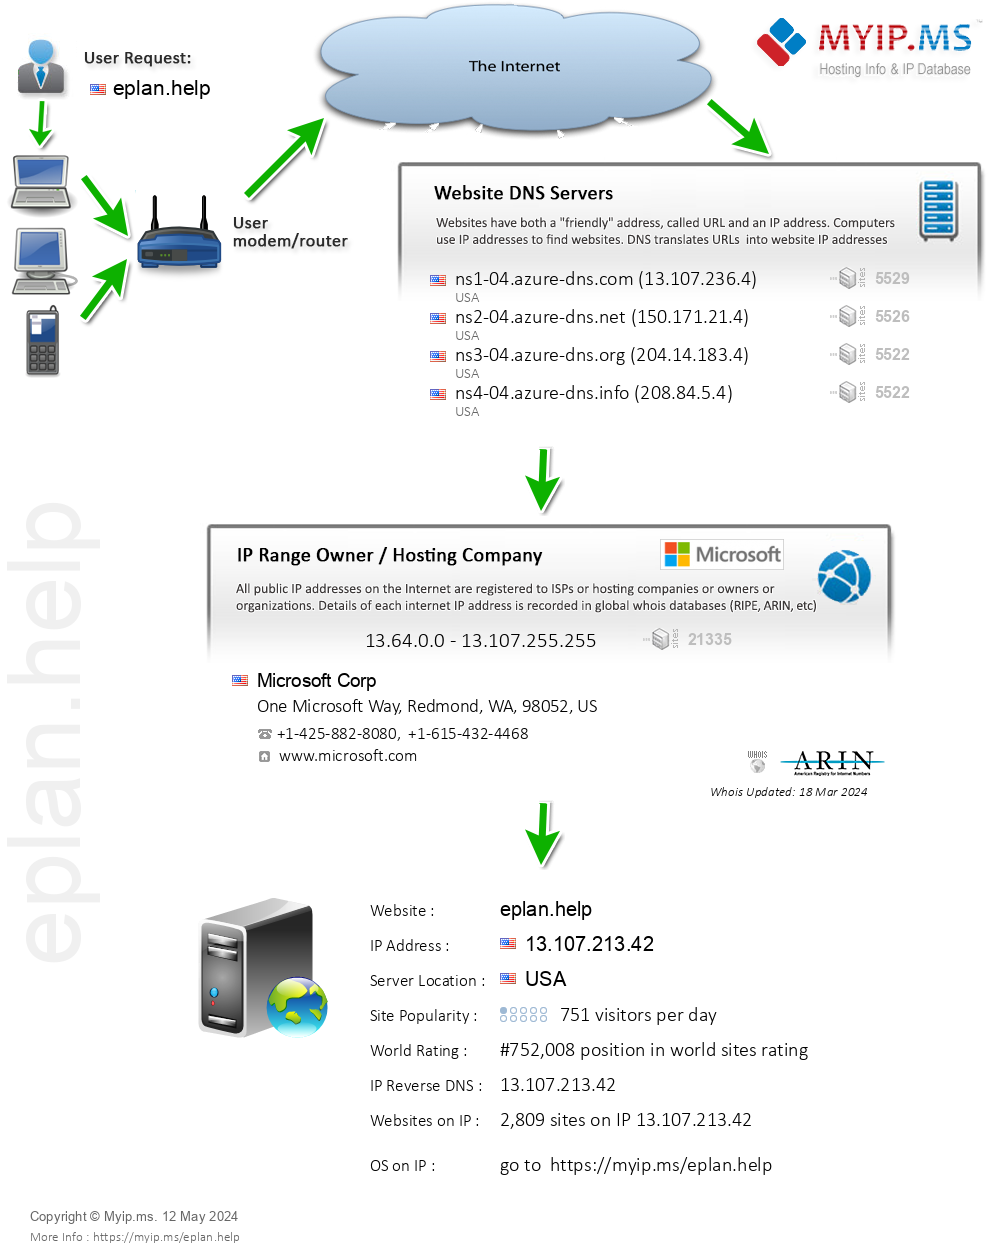 Eplan.help - Website Hosting Visual IP Diagram